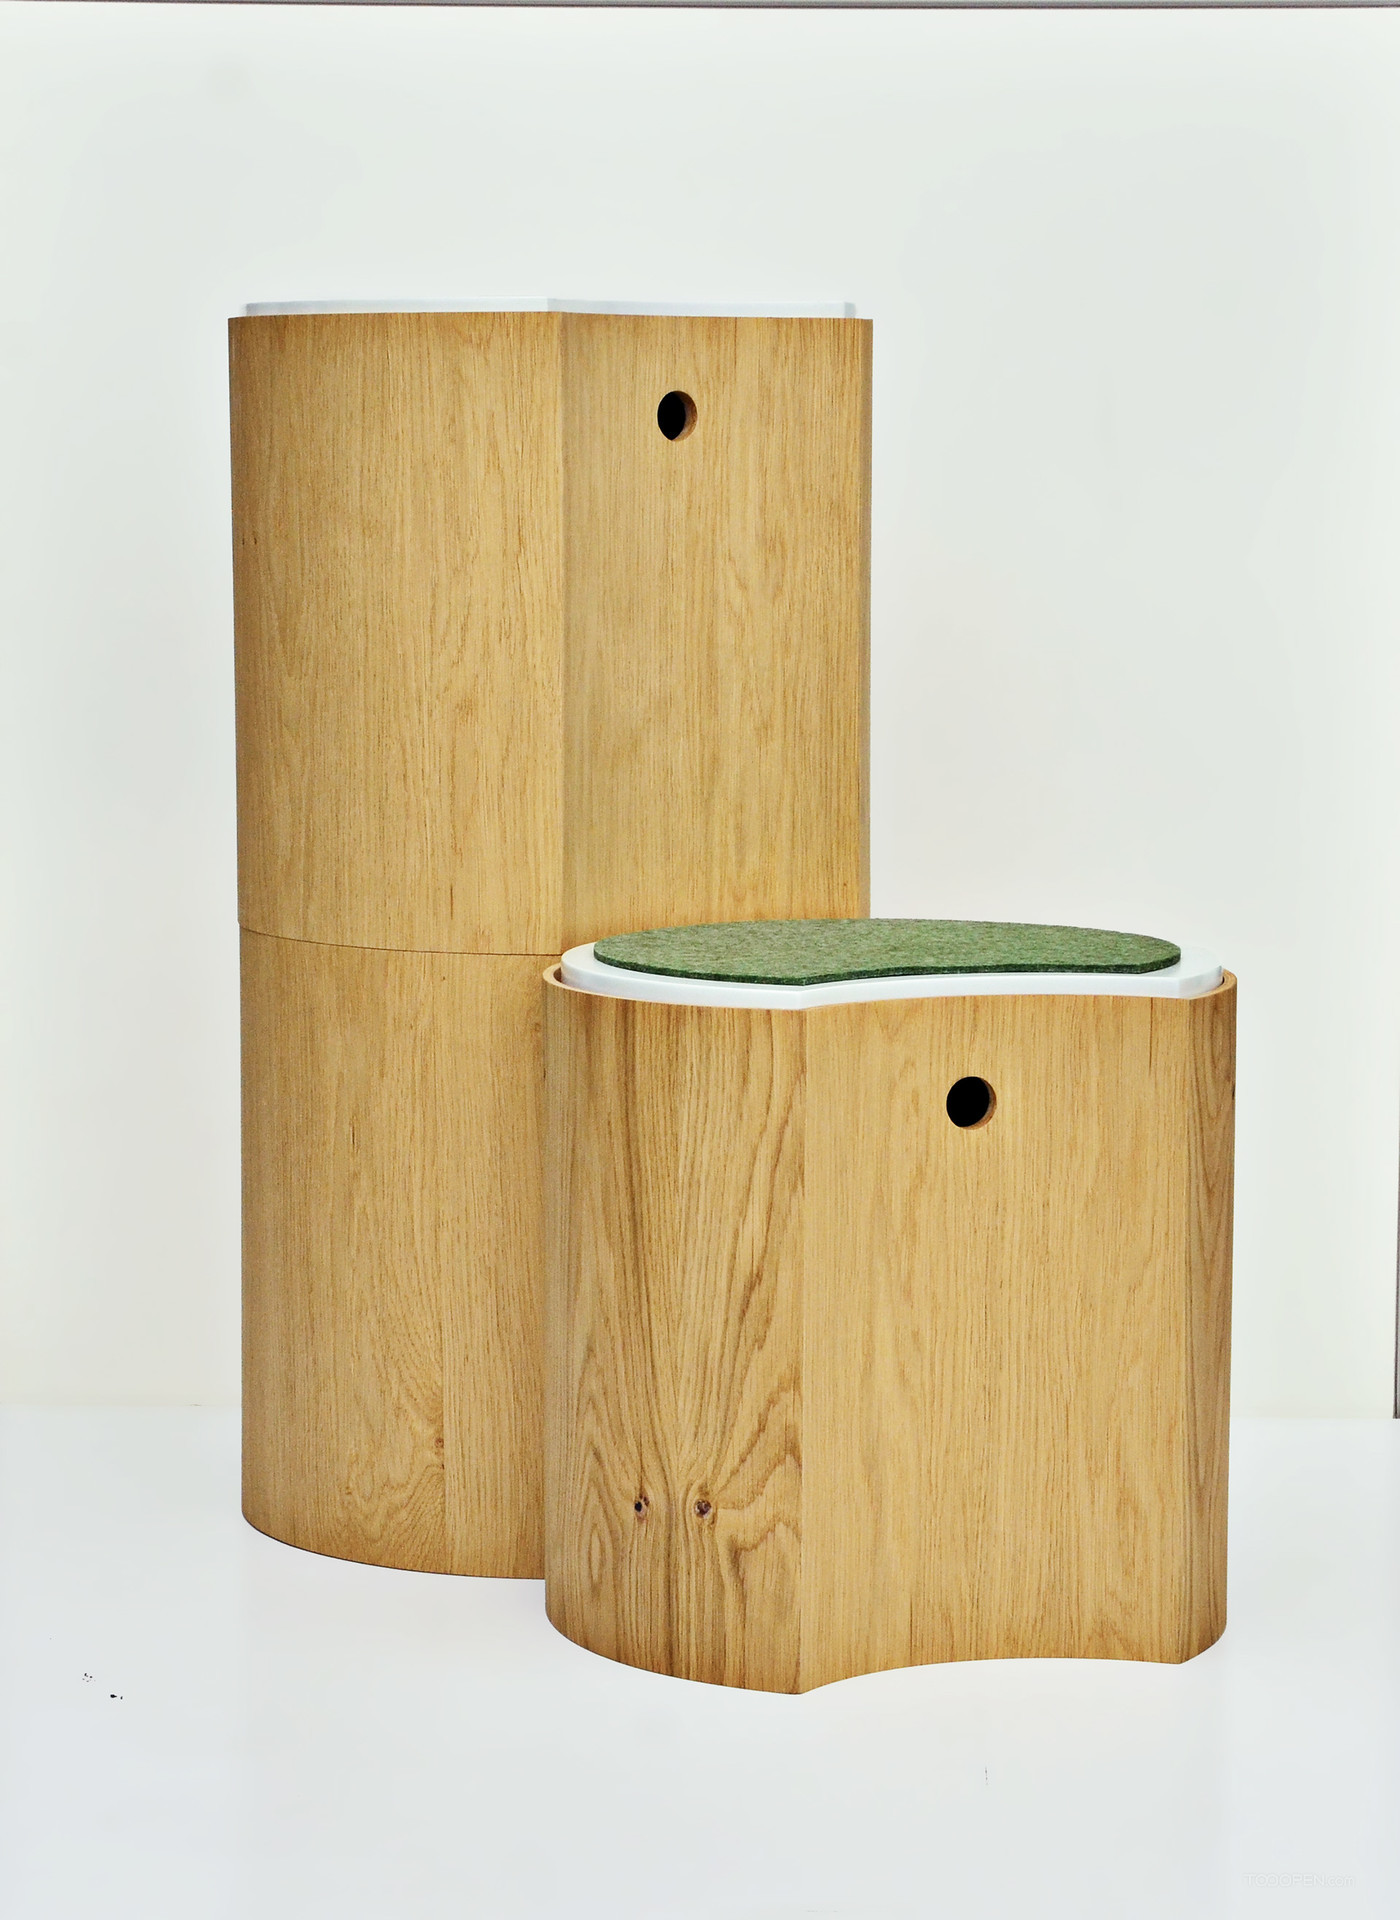 多功能茶罐造型坐凳家具设计作品欣赏-08